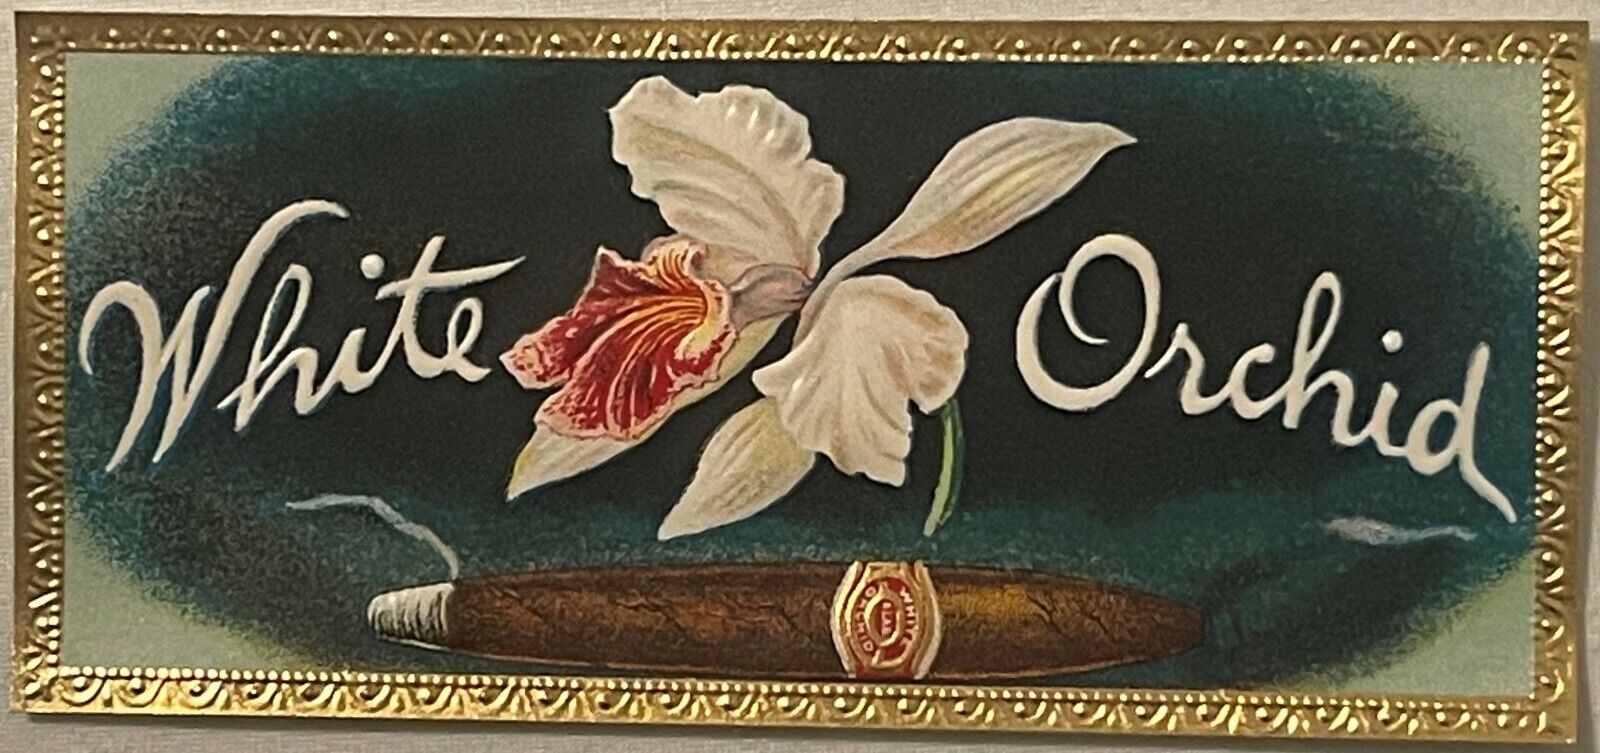 Antique Vintage White Orchid Embossed Cigar Label Bonneauville, PA 1900s - 1920s